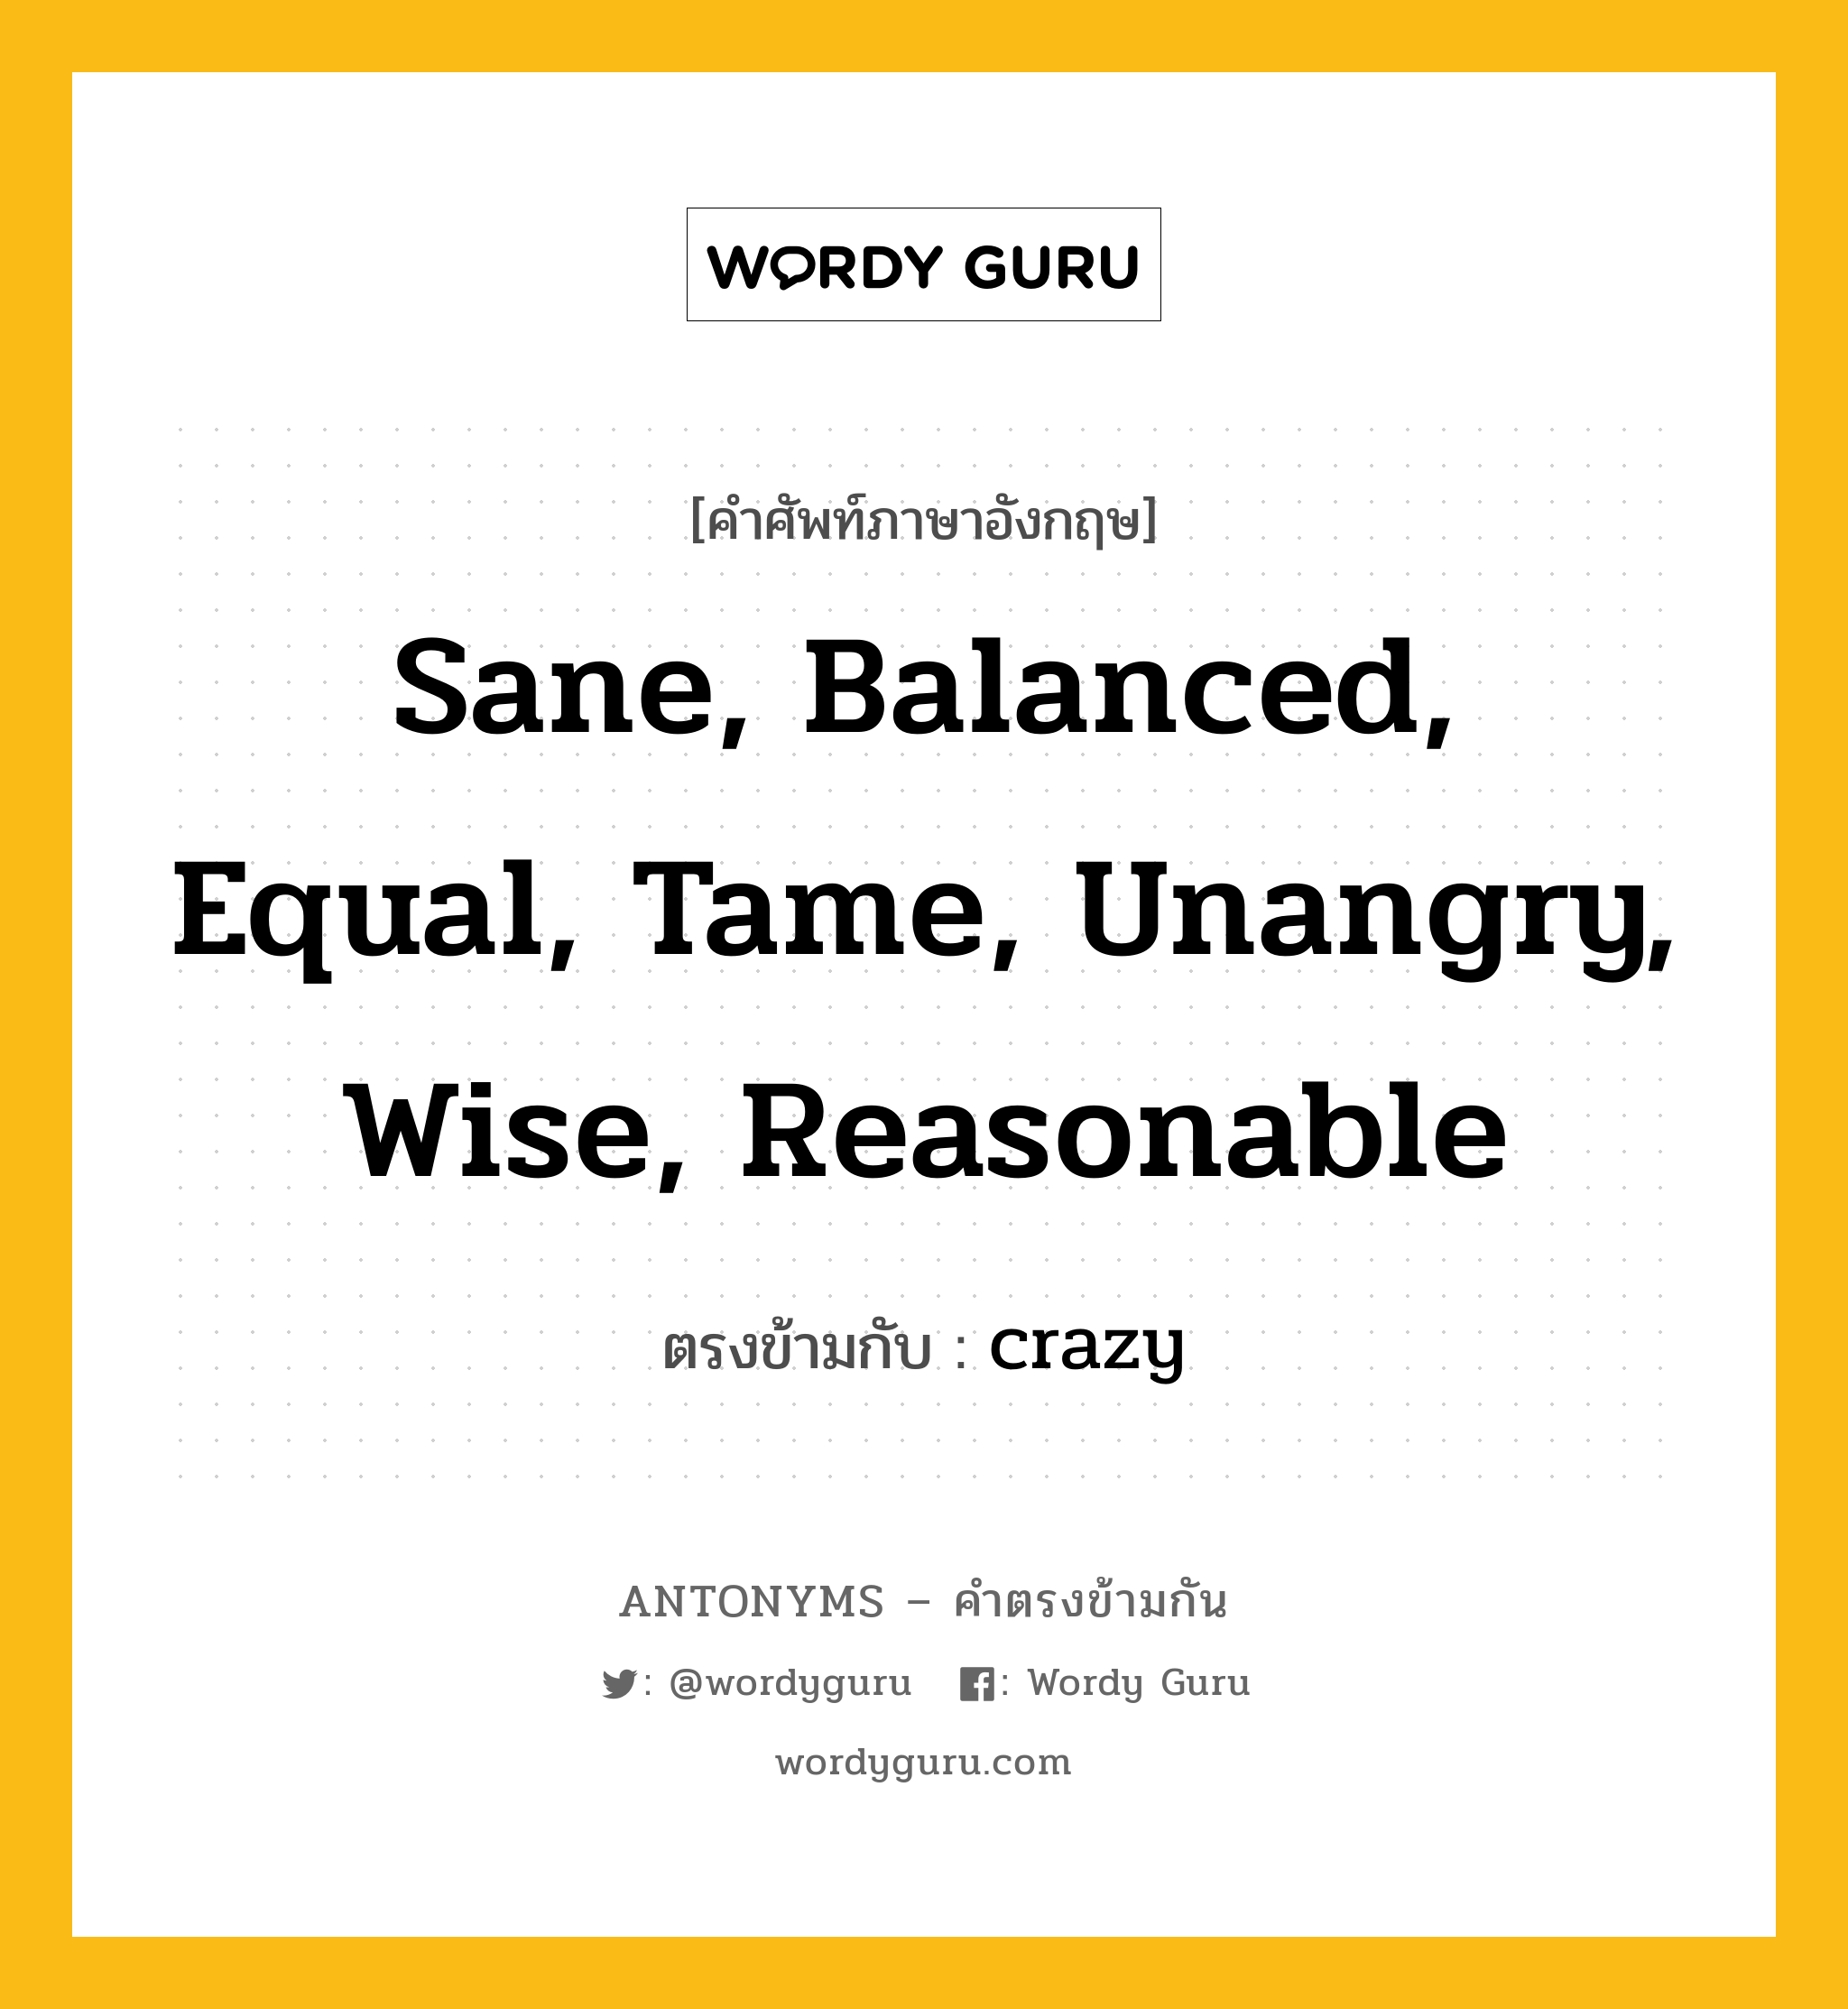 sane, balanced, equal, tame, unangry, wise, reasonable เป็นคำตรงข้ามกับคำไหนบ้าง?, คำศัพท์ภาษาอังกฤษที่มีความหมายตรงข้ามกัน sane, balanced, equal, tame, unangry, wise, reasonable ตรงข้ามกับ crazy หมวด crazy